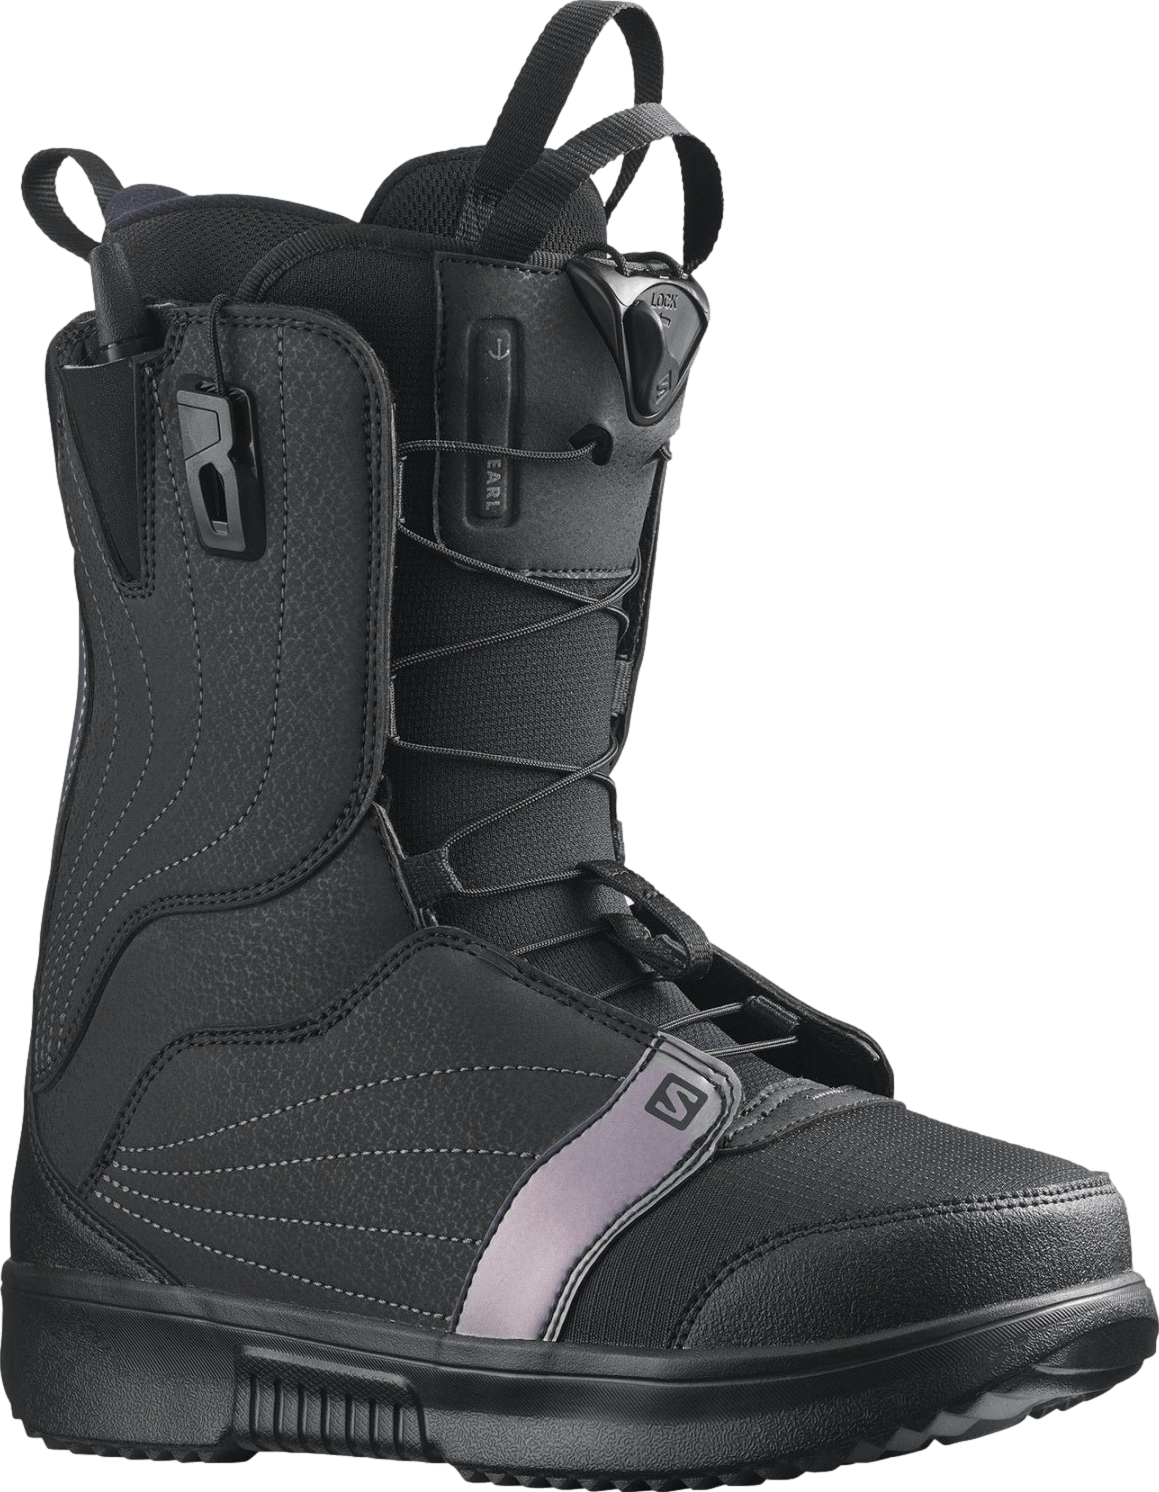 Salomon Pearl BOA Snowboard Boots · Women's · 2021